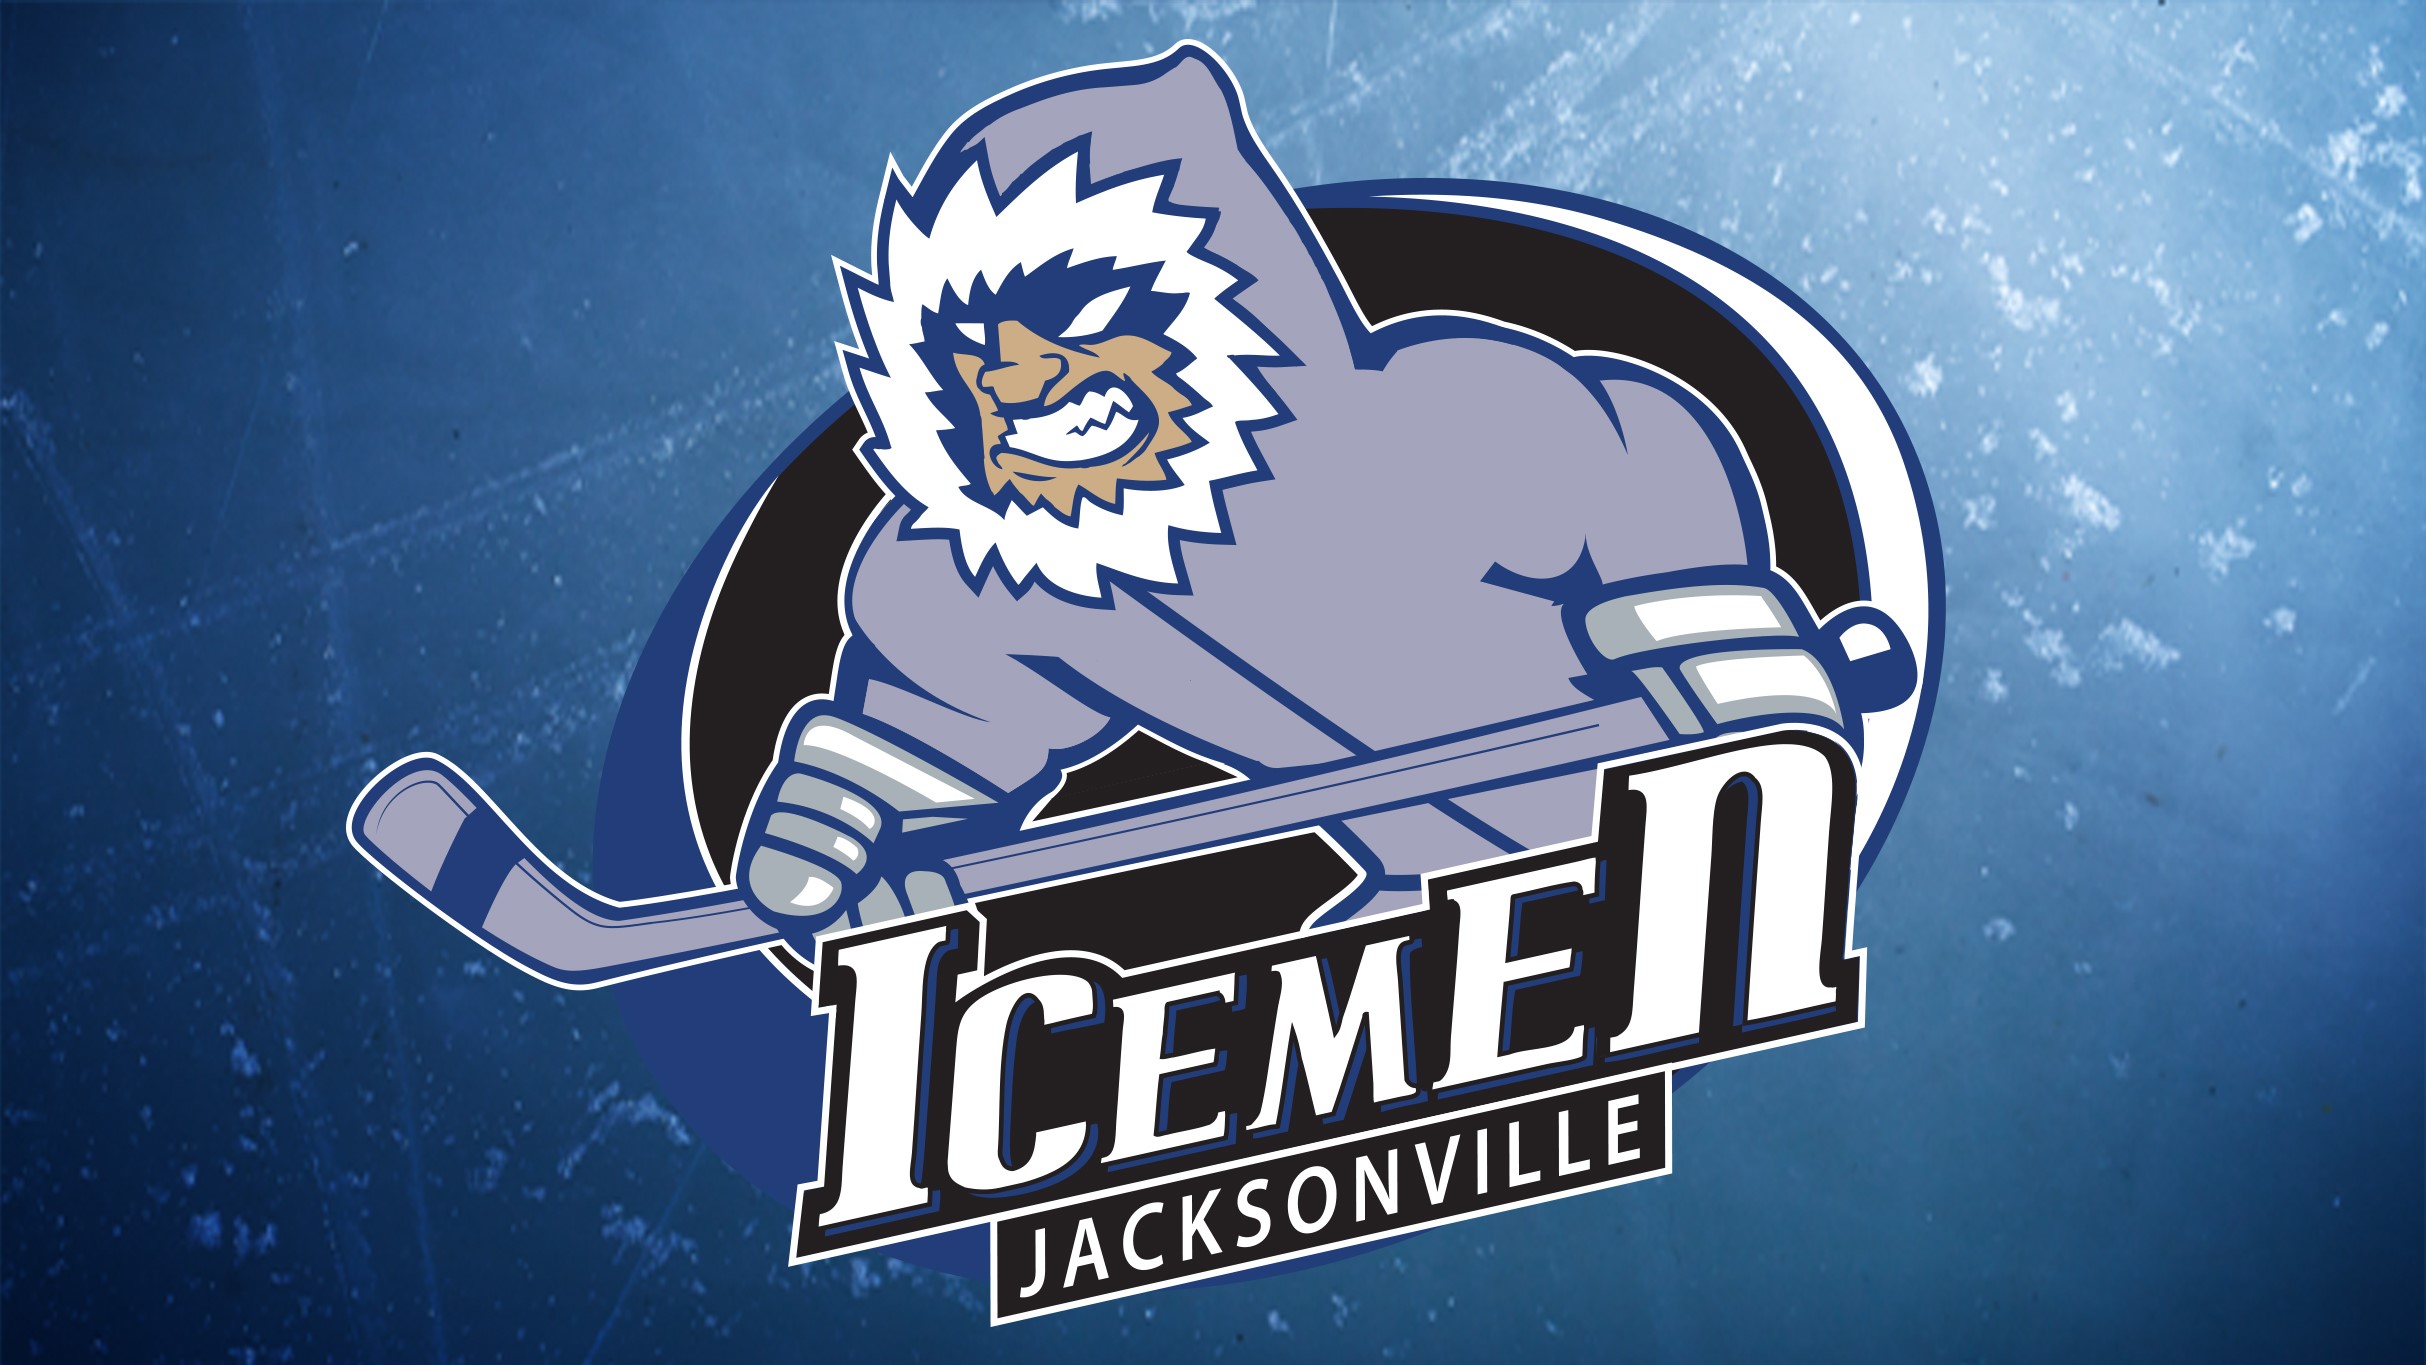 Jacksonville Icemen v TBD Opponent Home Playoffs Round 2 Game 1